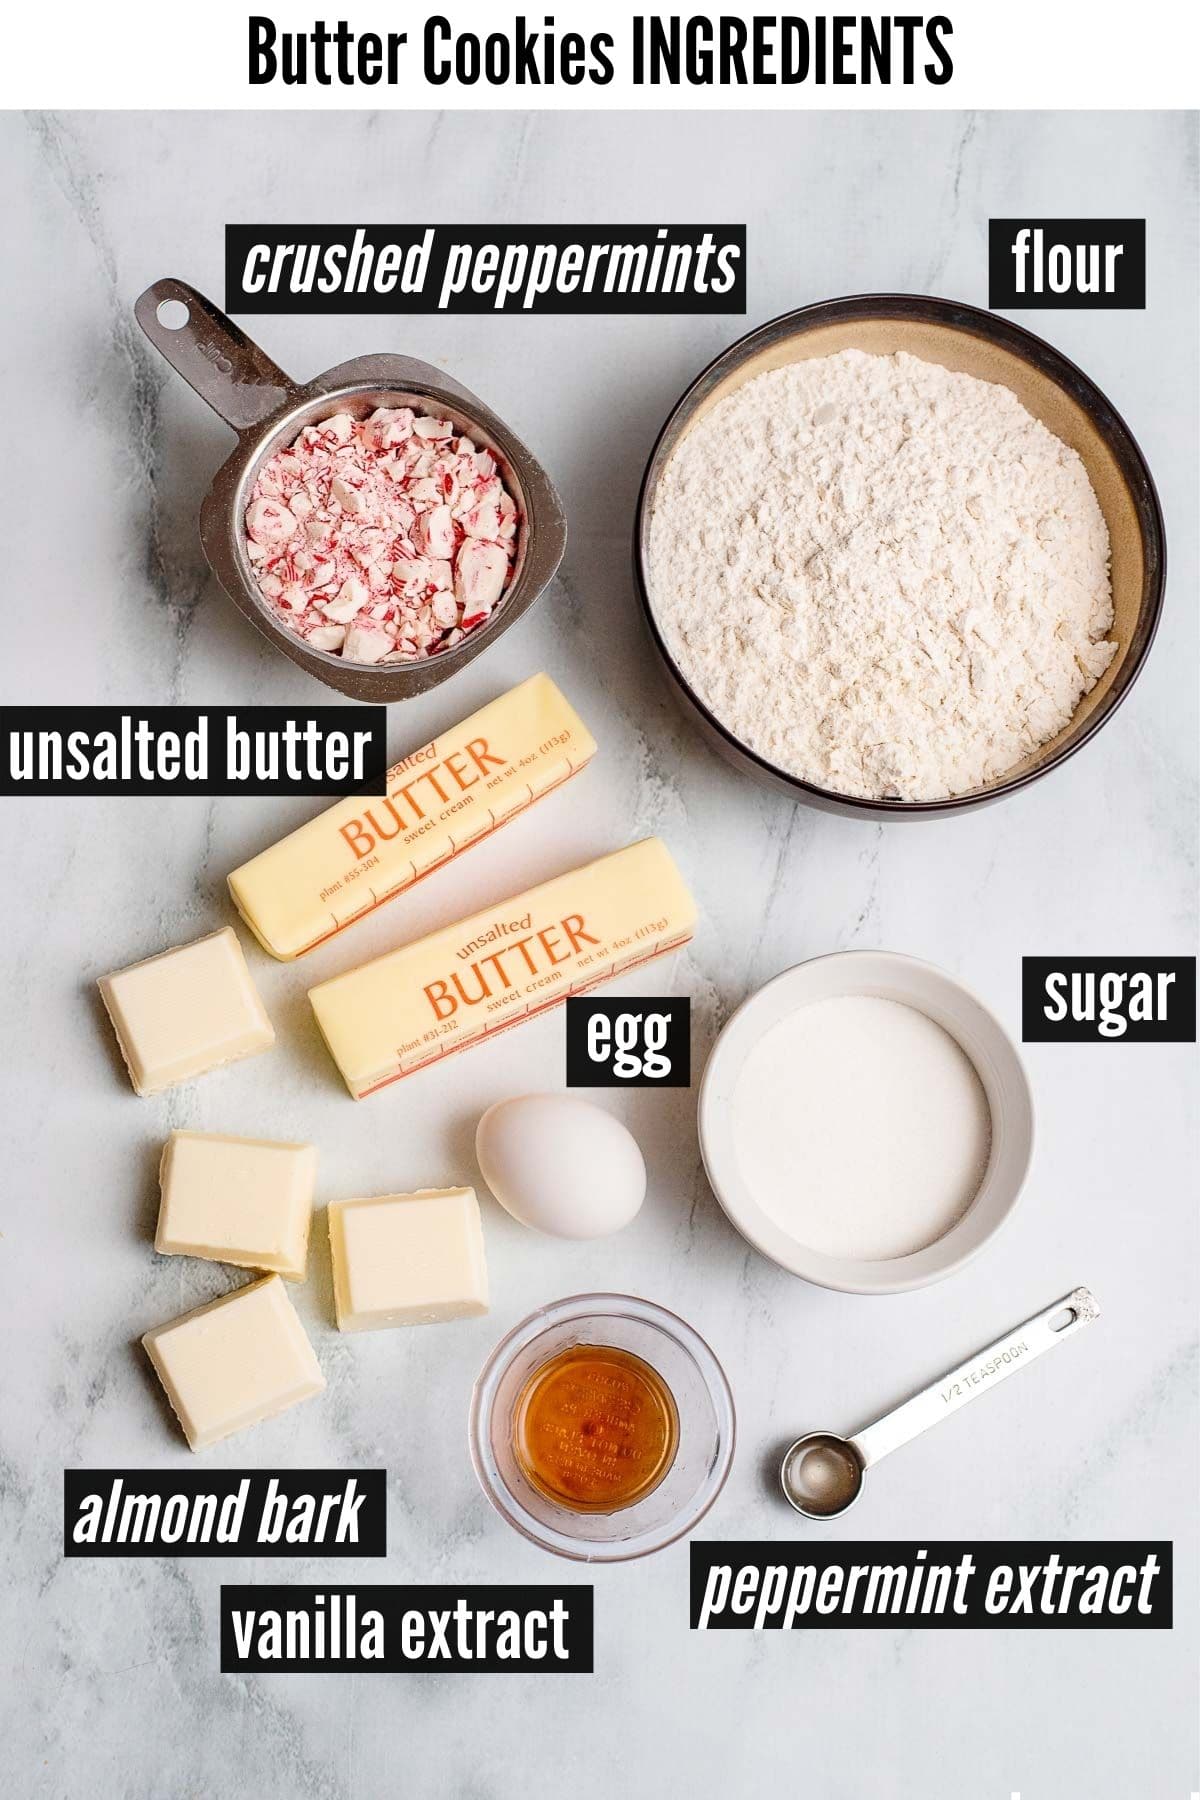 butter cookies ingredients 